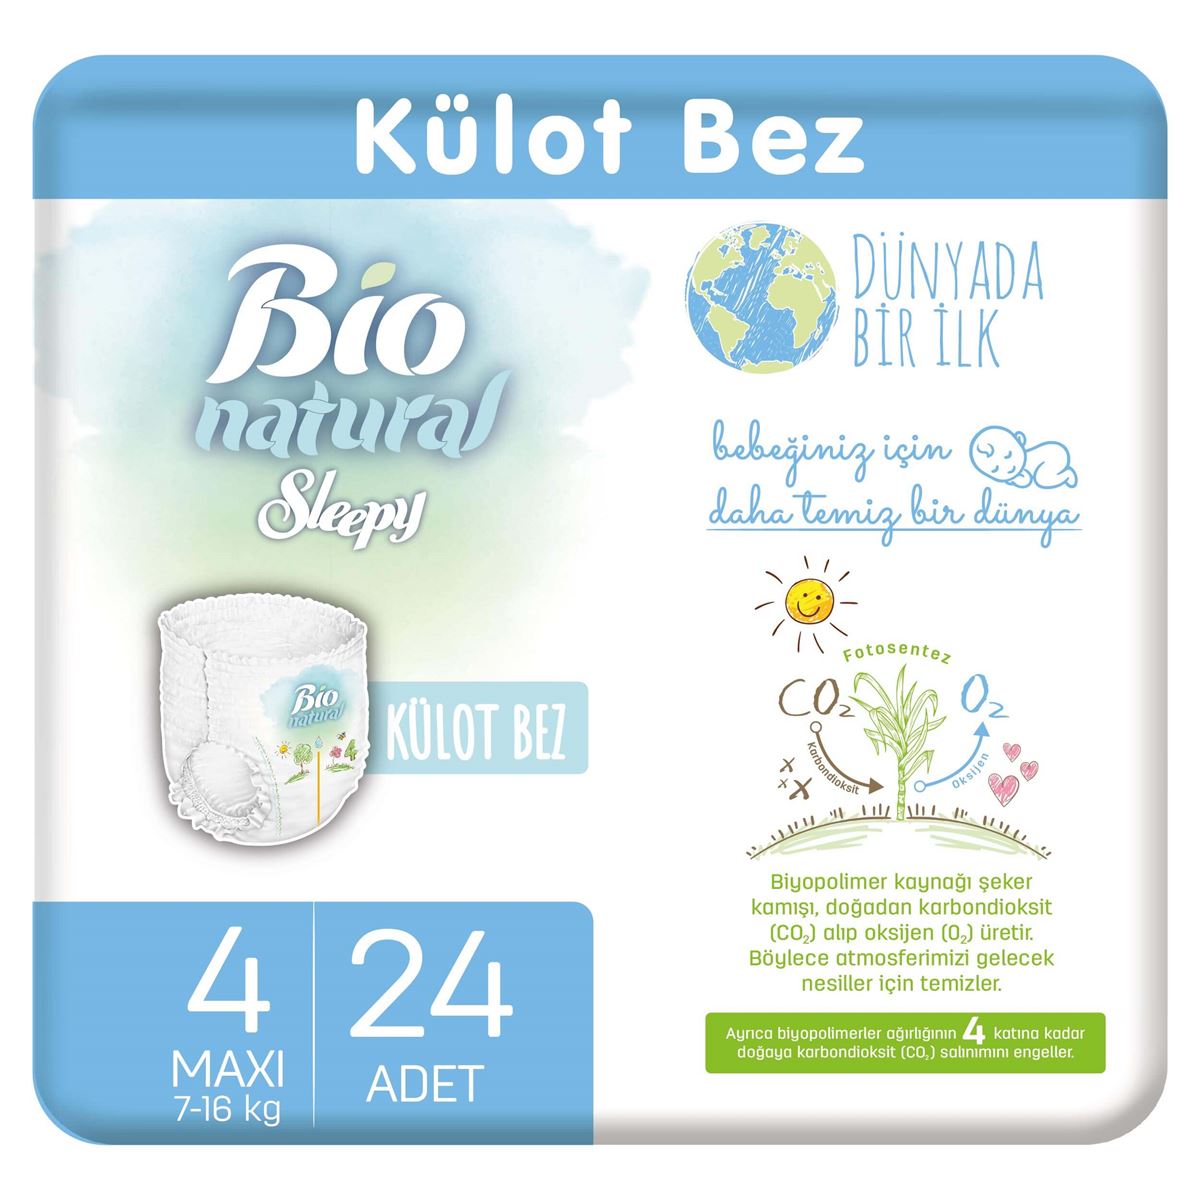 Bio Natural Külot Bez 4 Numara Maxi 24 Adet